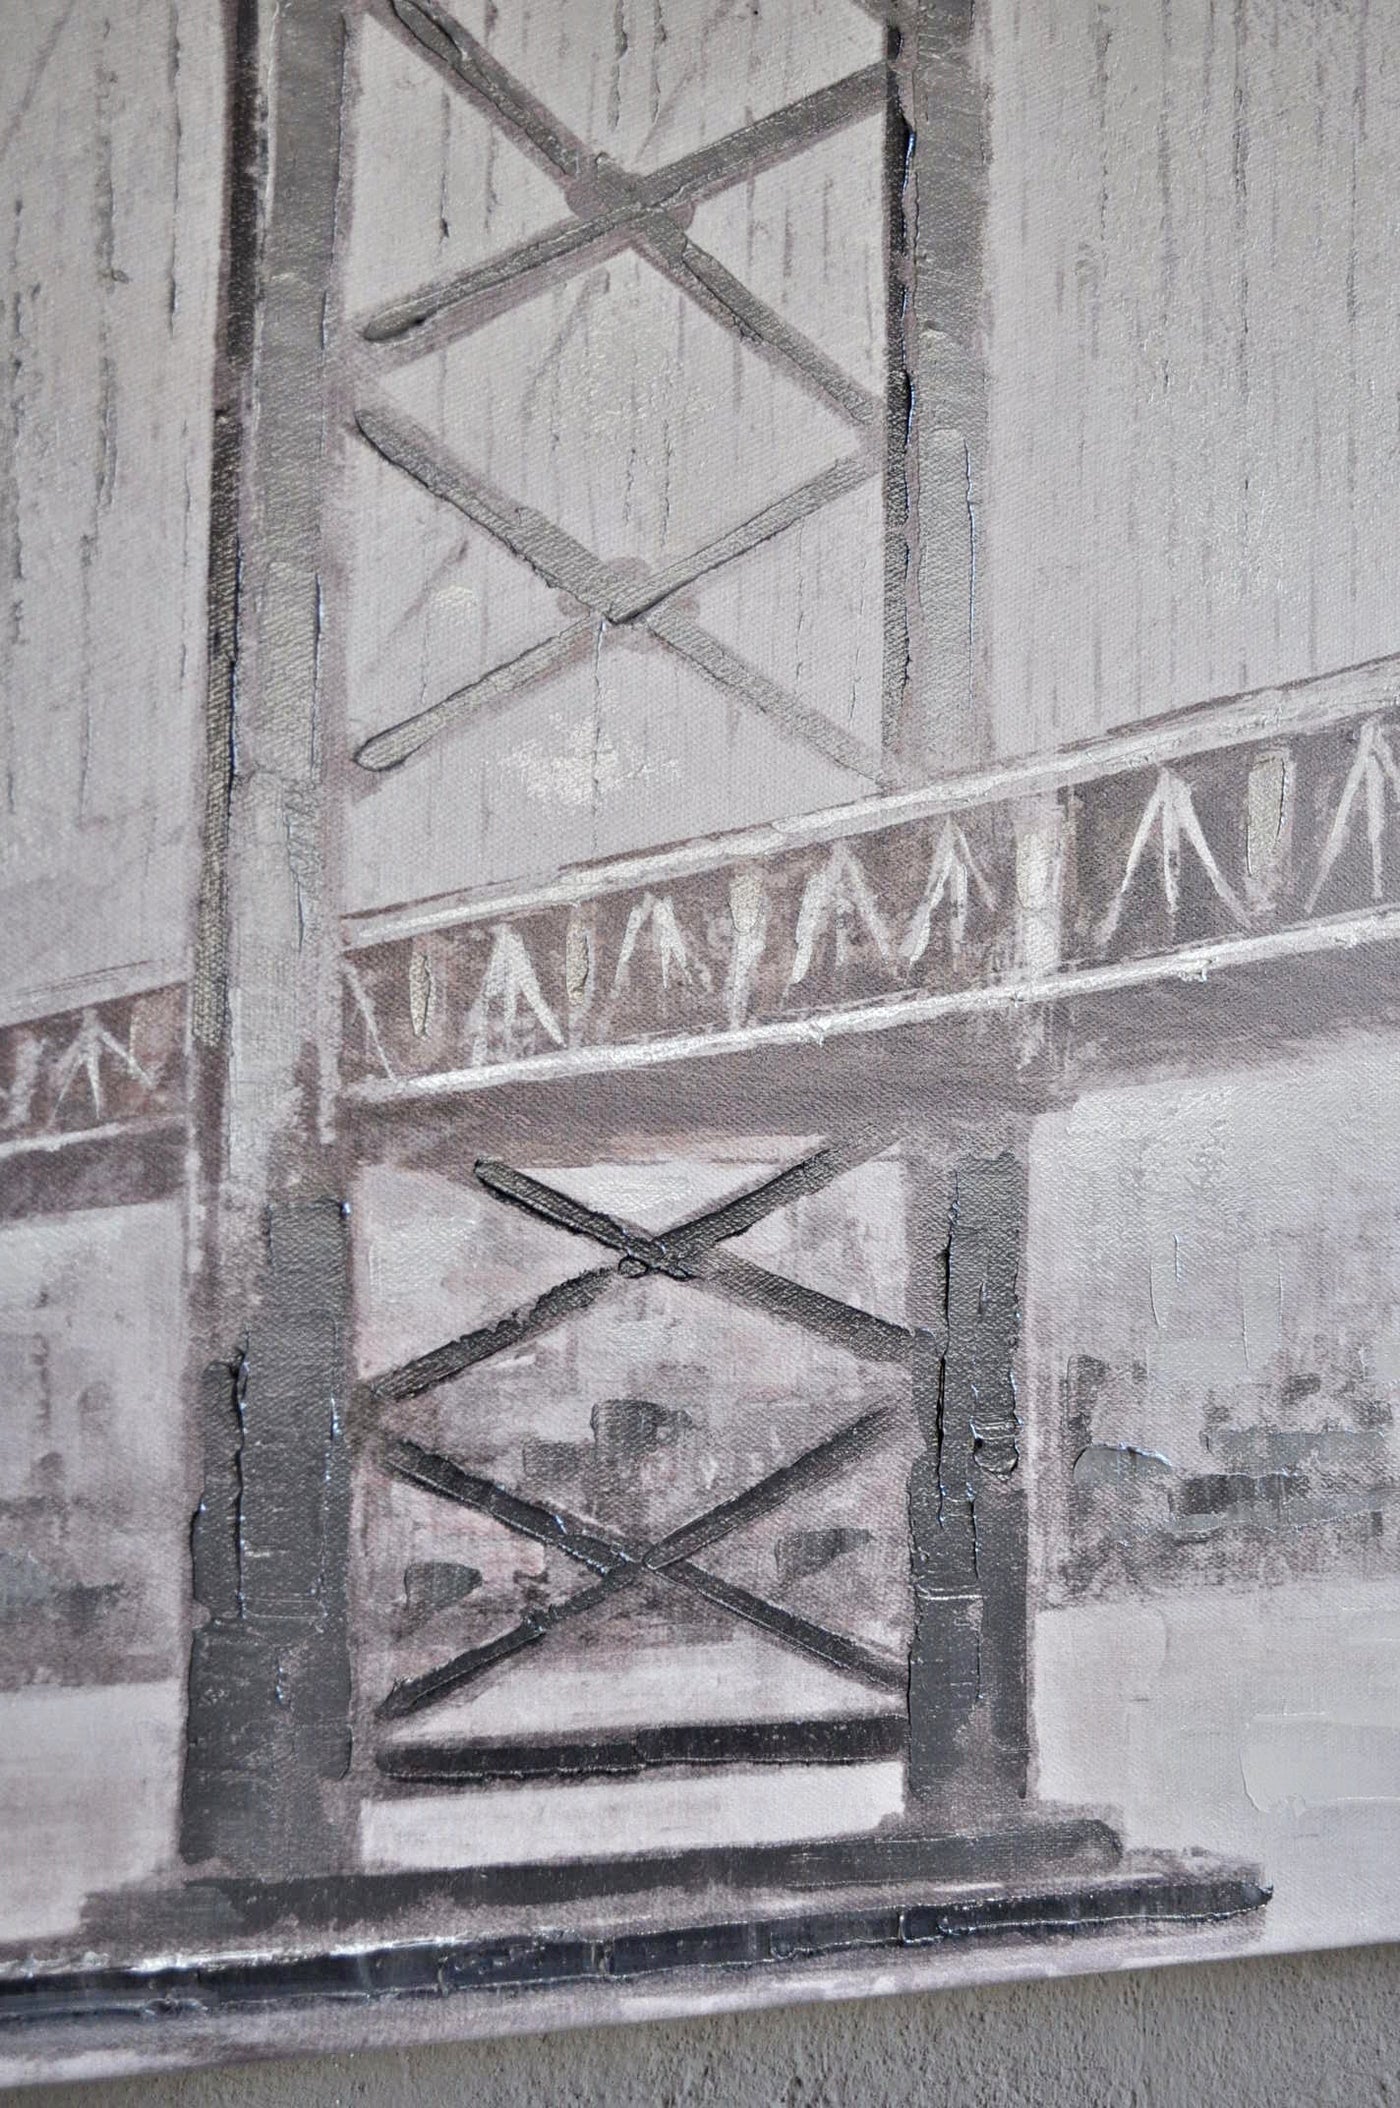 Leinwand Bild mit Hängebrücke als Motiv 70 x 100 cm Schöne Deko